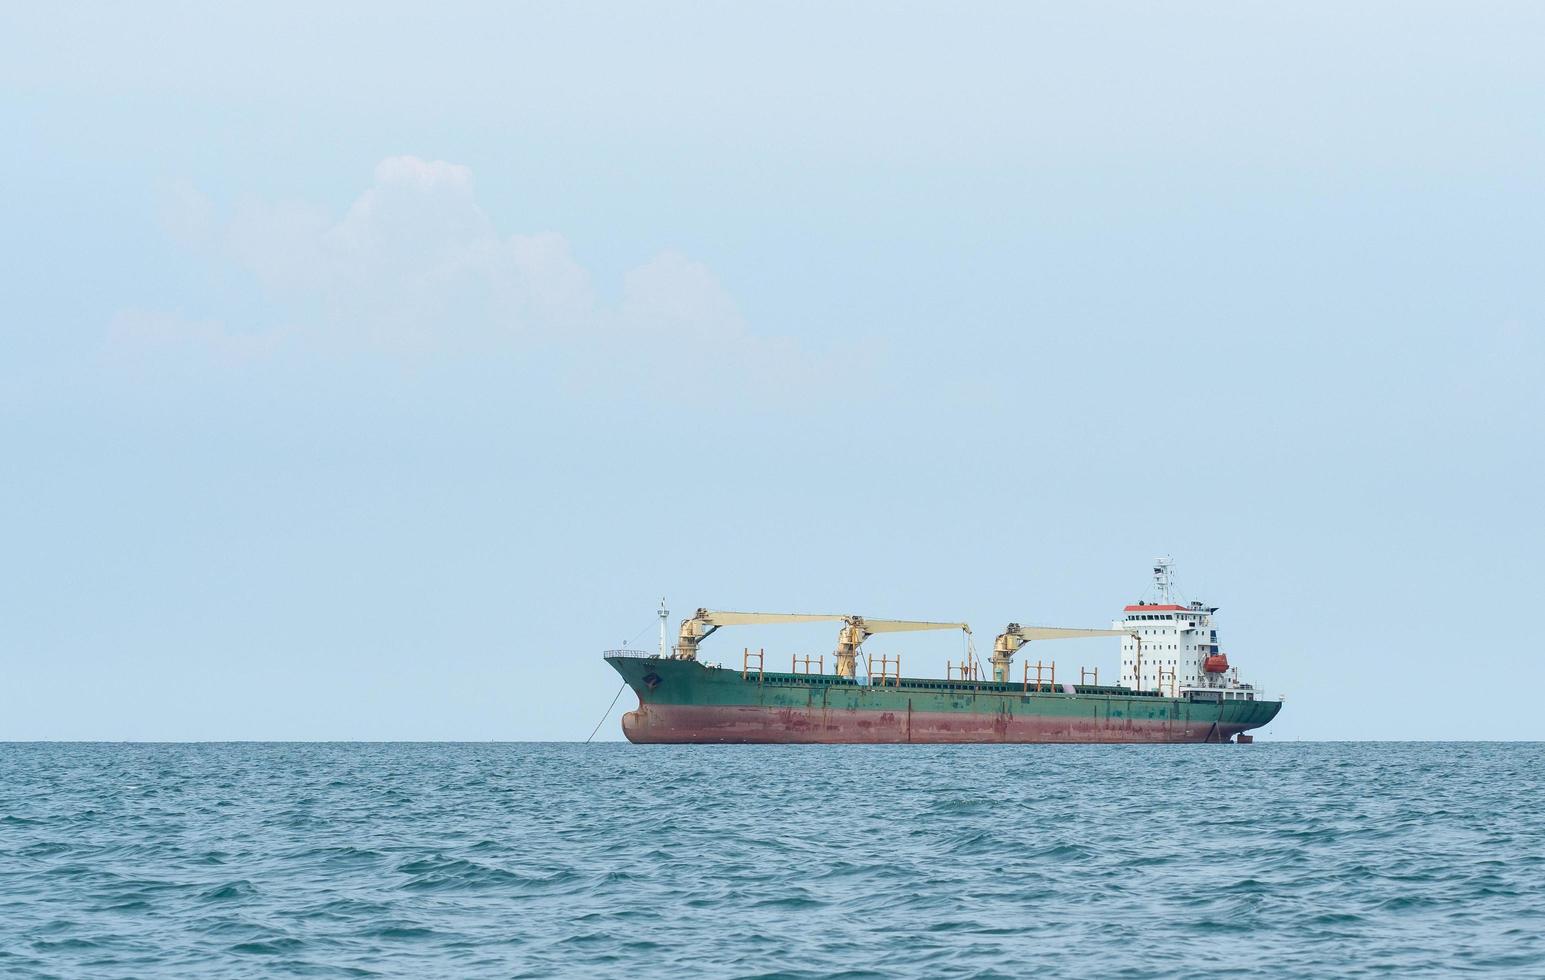 großes schiff mit kranentladung im ozean mit blauer himmellandschaft, frachtschiffkonzept im industriellen meer foto